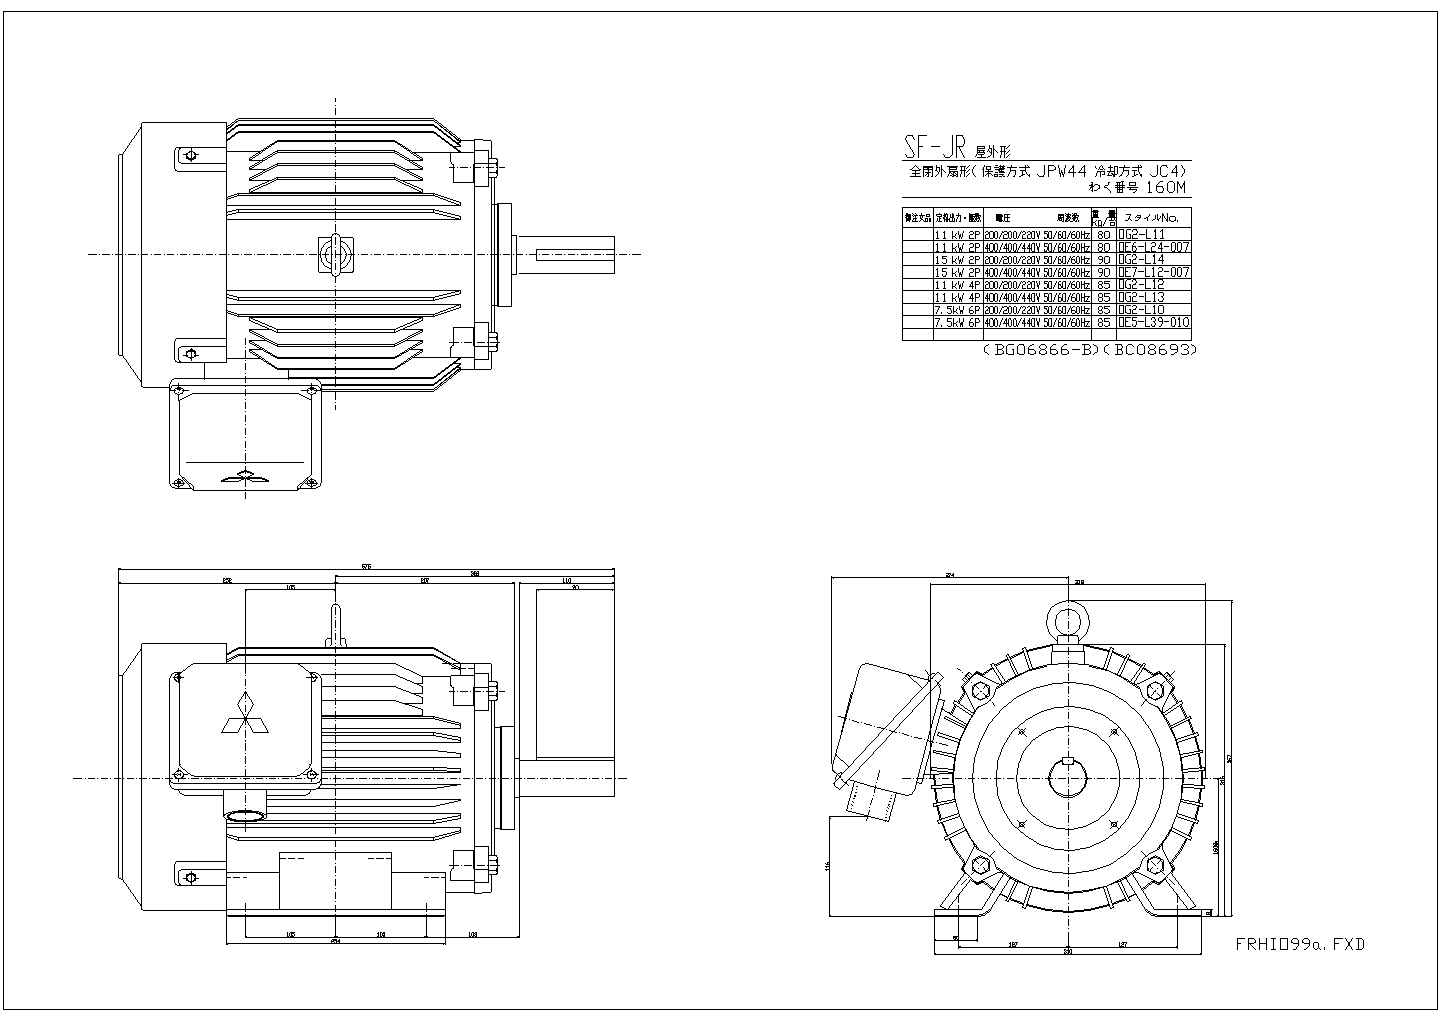 某三菱的电动机CAD设计完整节点图纸